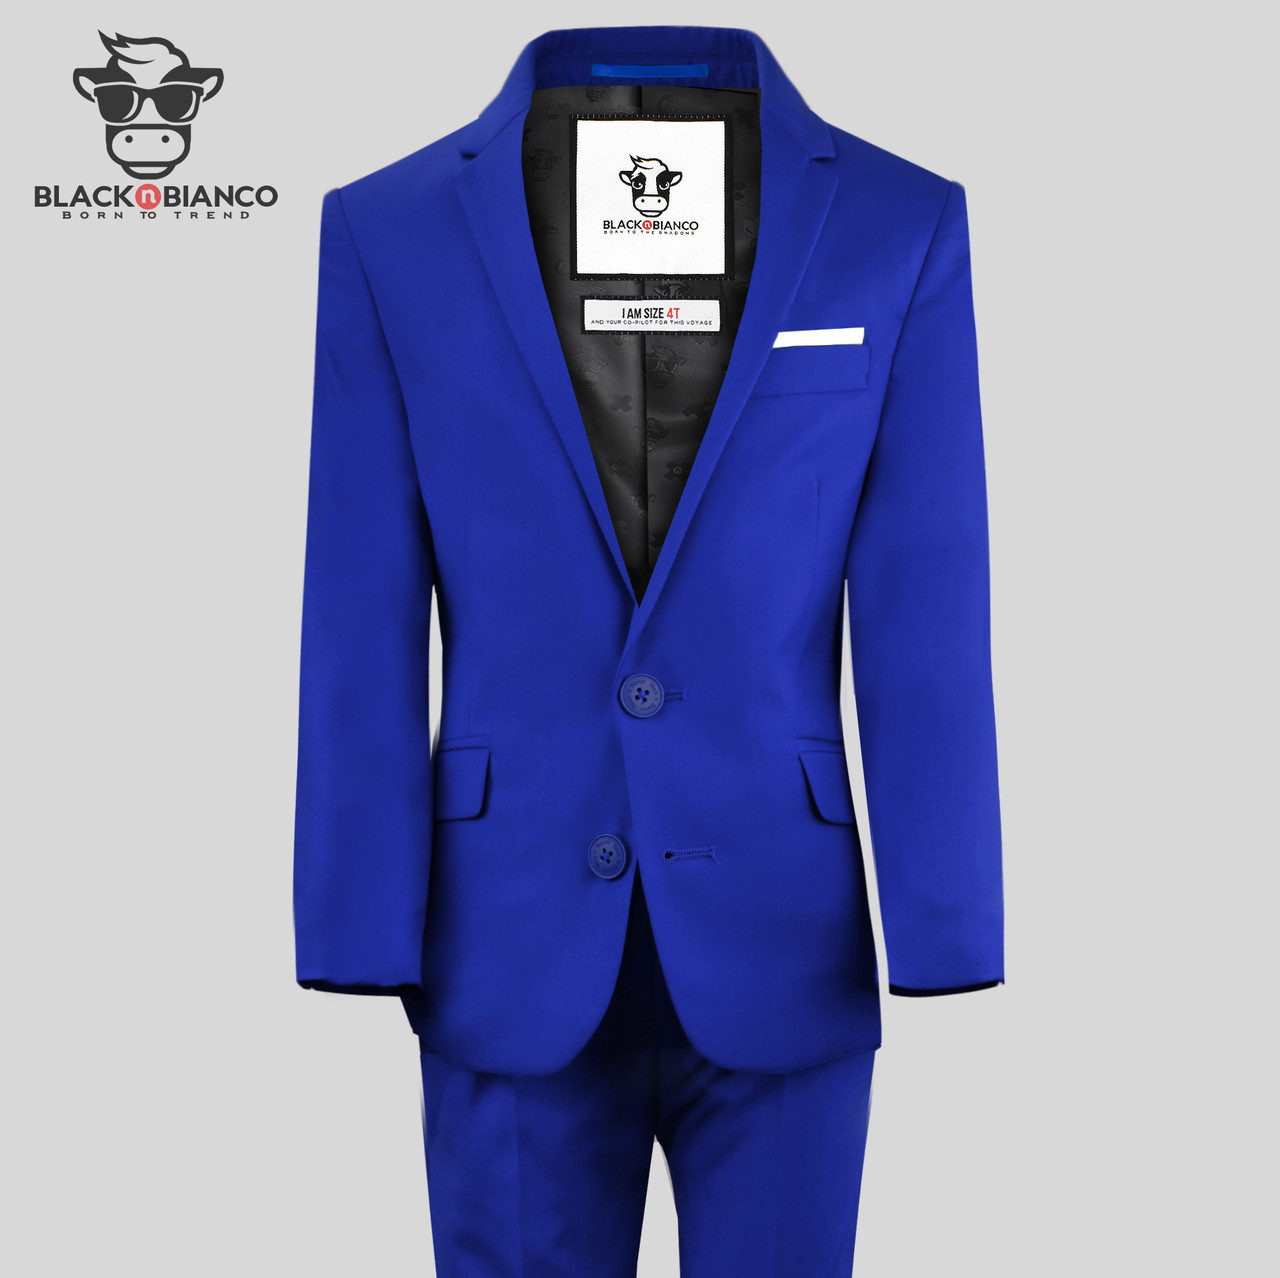 Royal Blue Slim Fit Suit